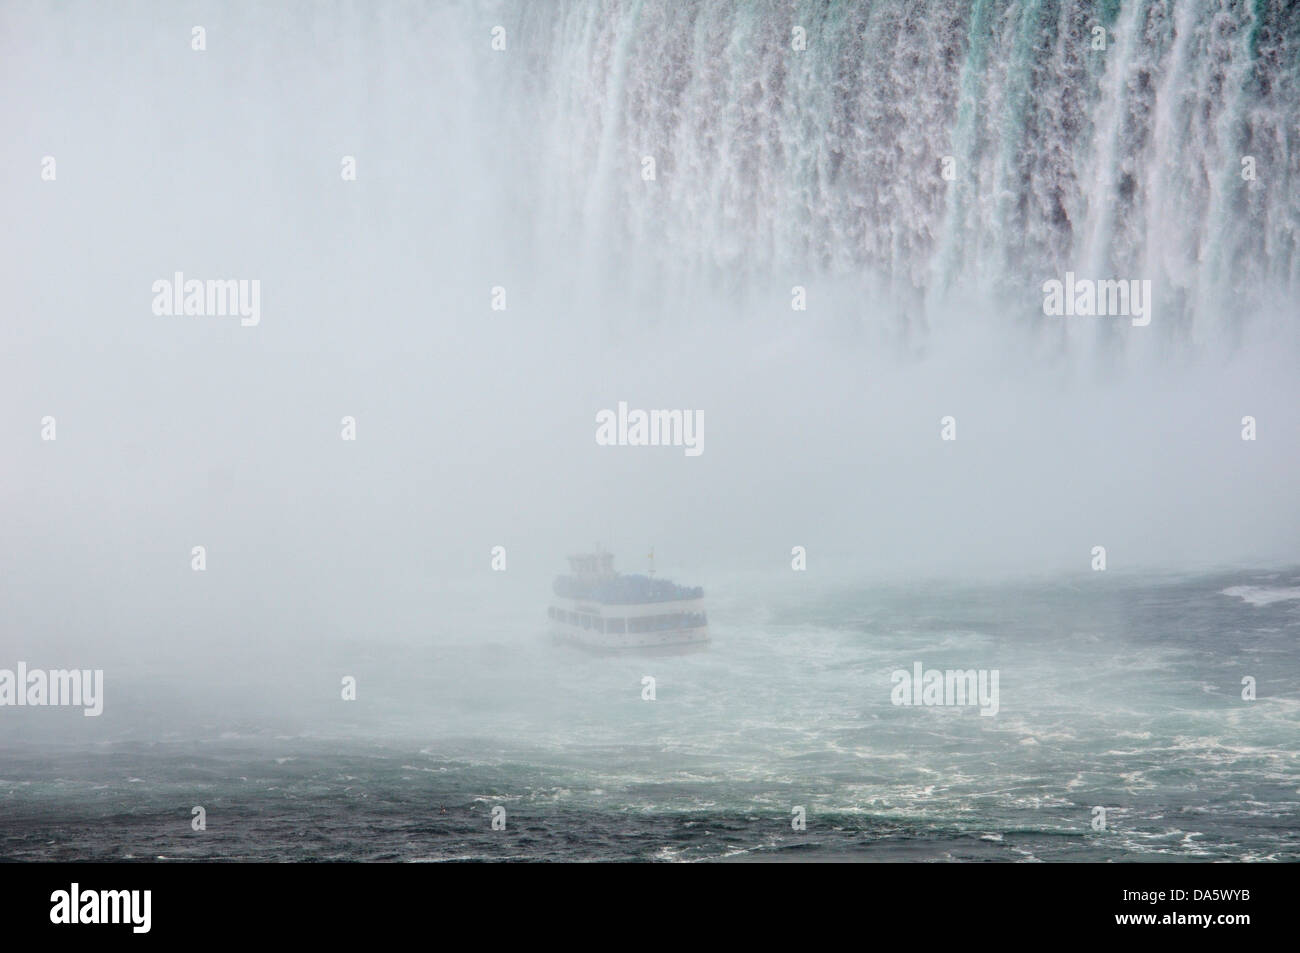 American Falls, Canada, la Domestica della Foschia, Niagara Falls, Acqua, Fiume Niagara, Ontario, tour in barca, viaggi in barca, giro in barca, giorno Foto Stock